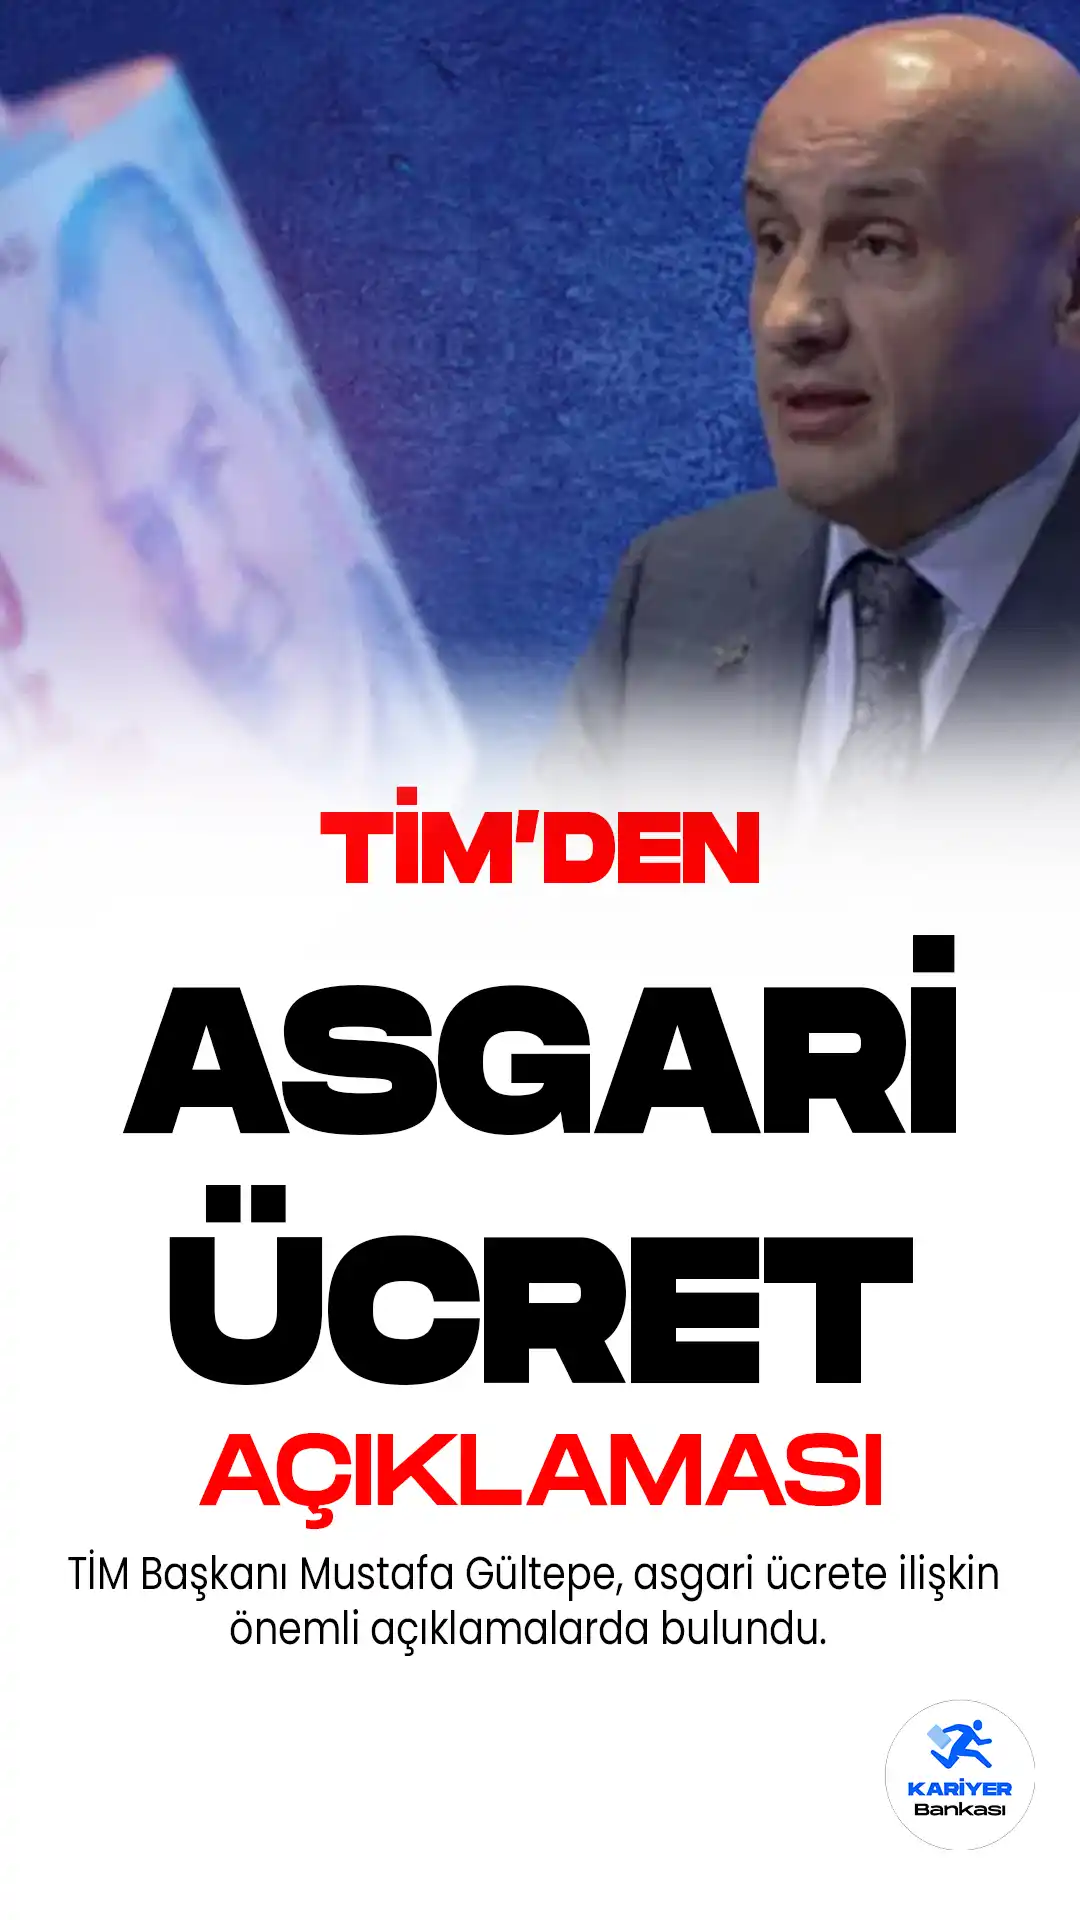 TİM'den asgari ücret açıklaması... TİM Başkanı Mustafa Gültepe, asgari ücretin 500 dolar seviyesine çıkmasına yönelik tartışmalara...